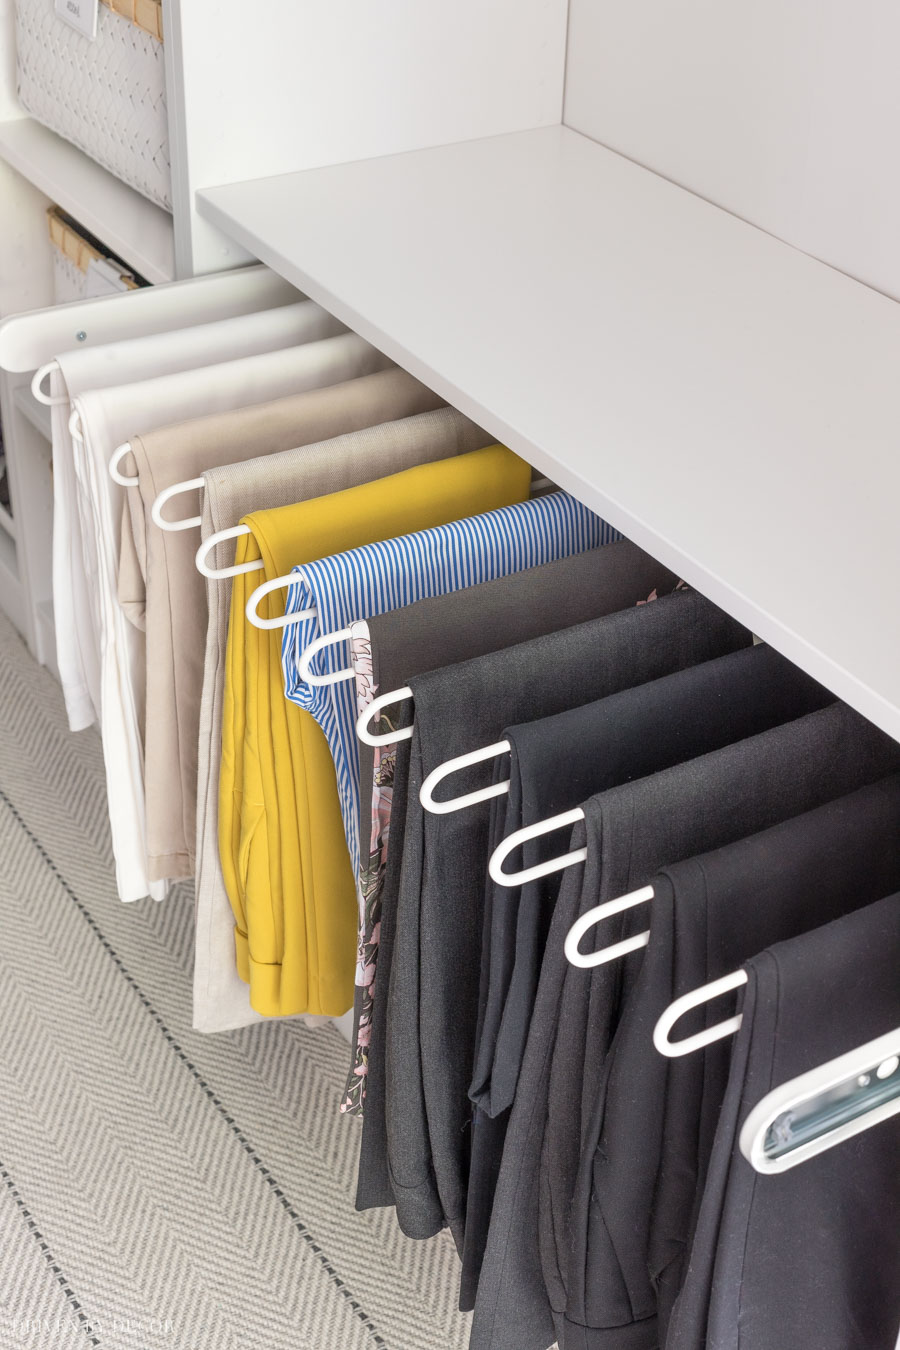 Pull-out Clothes Hanger, Trouser Rack, Extending Rail Wardrobe Storage  Organiser | eBay